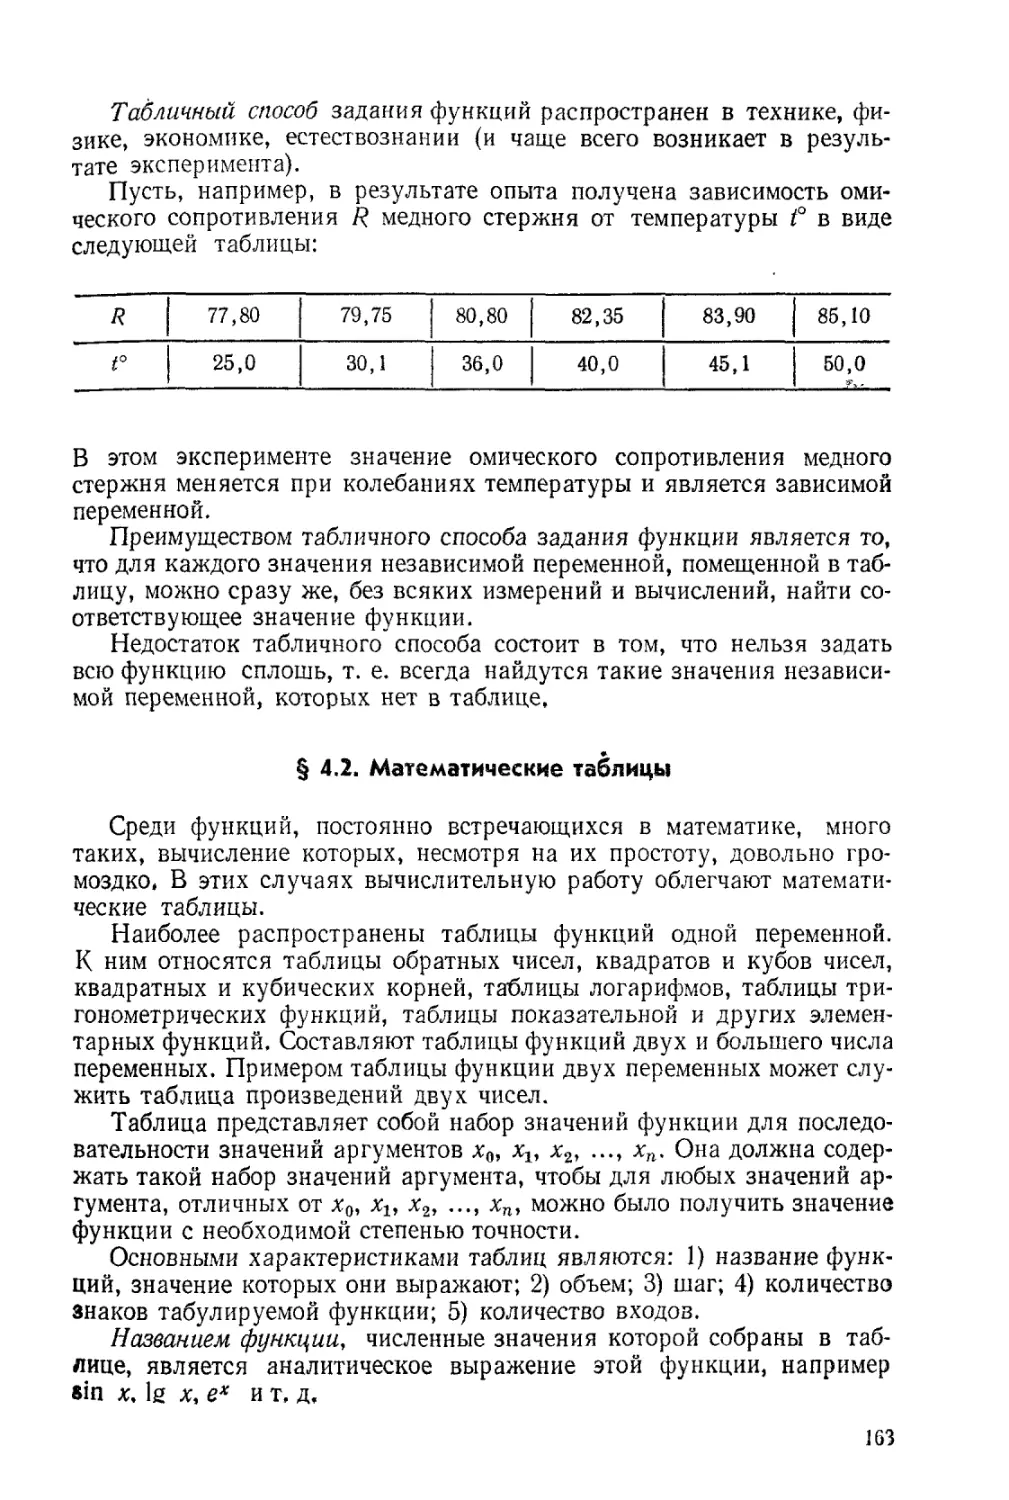 § 4.2. Математические таблицы